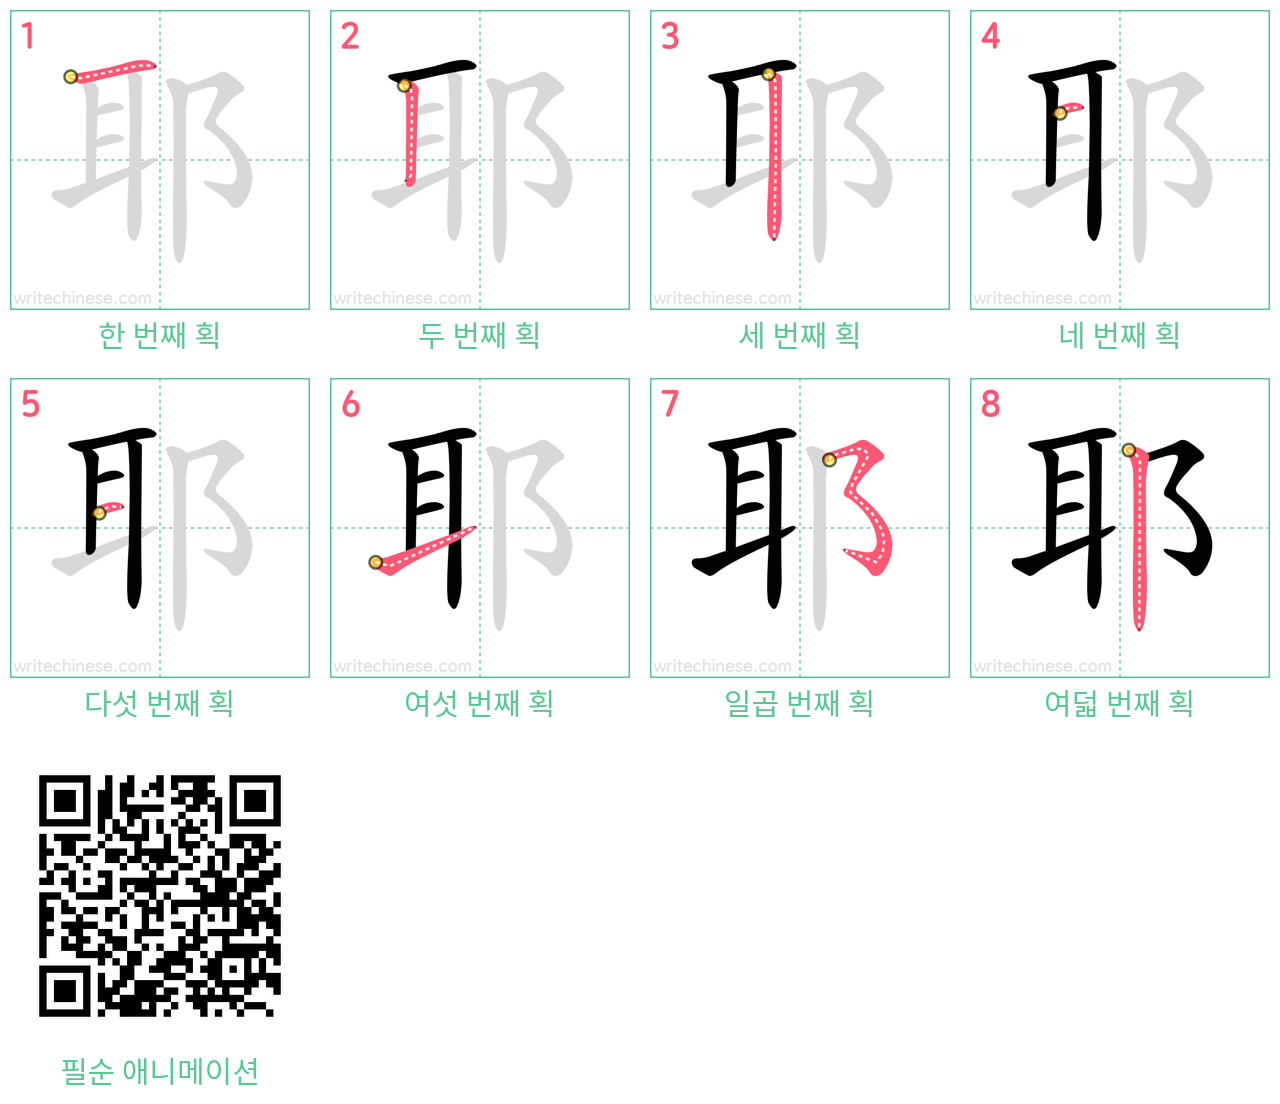 耶 step-by-step stroke order diagrams